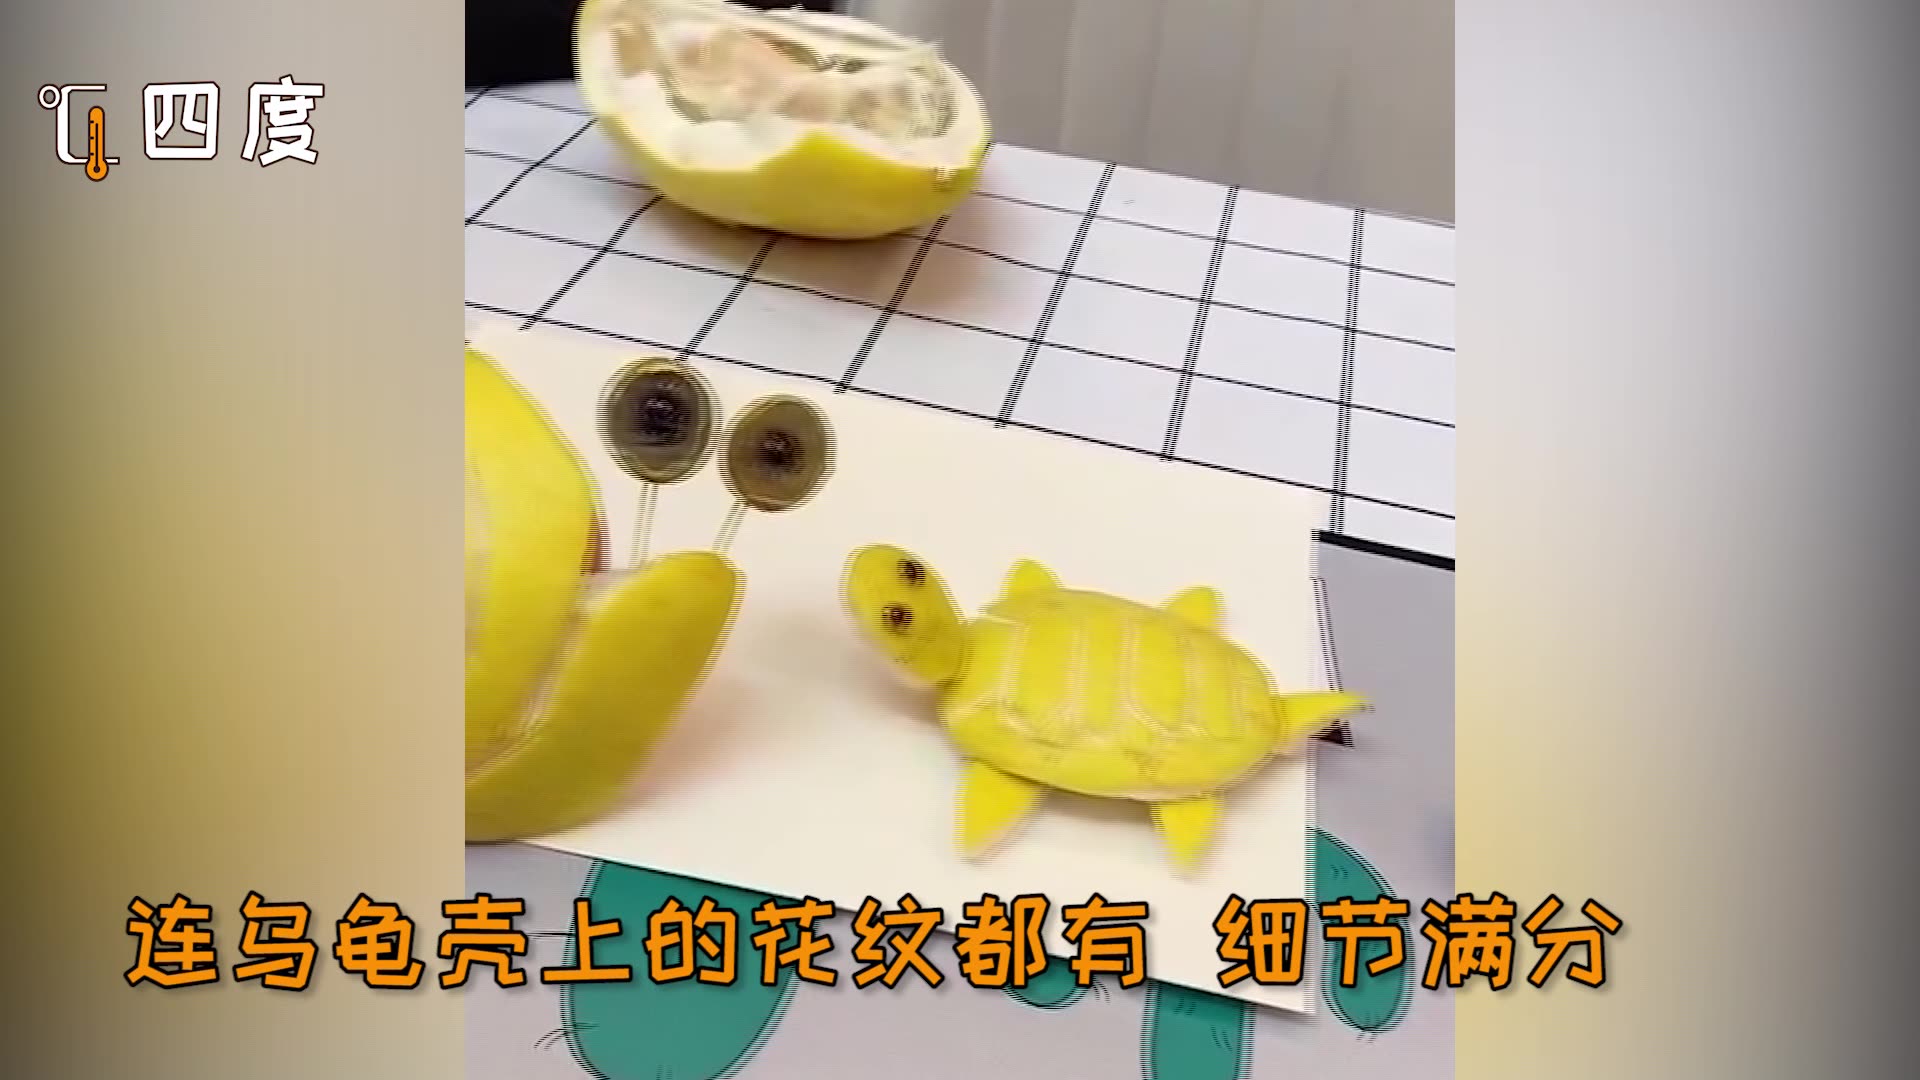 萌娃脑洞大开用柚子做创意小动物最后一个跟真的一样满是细节